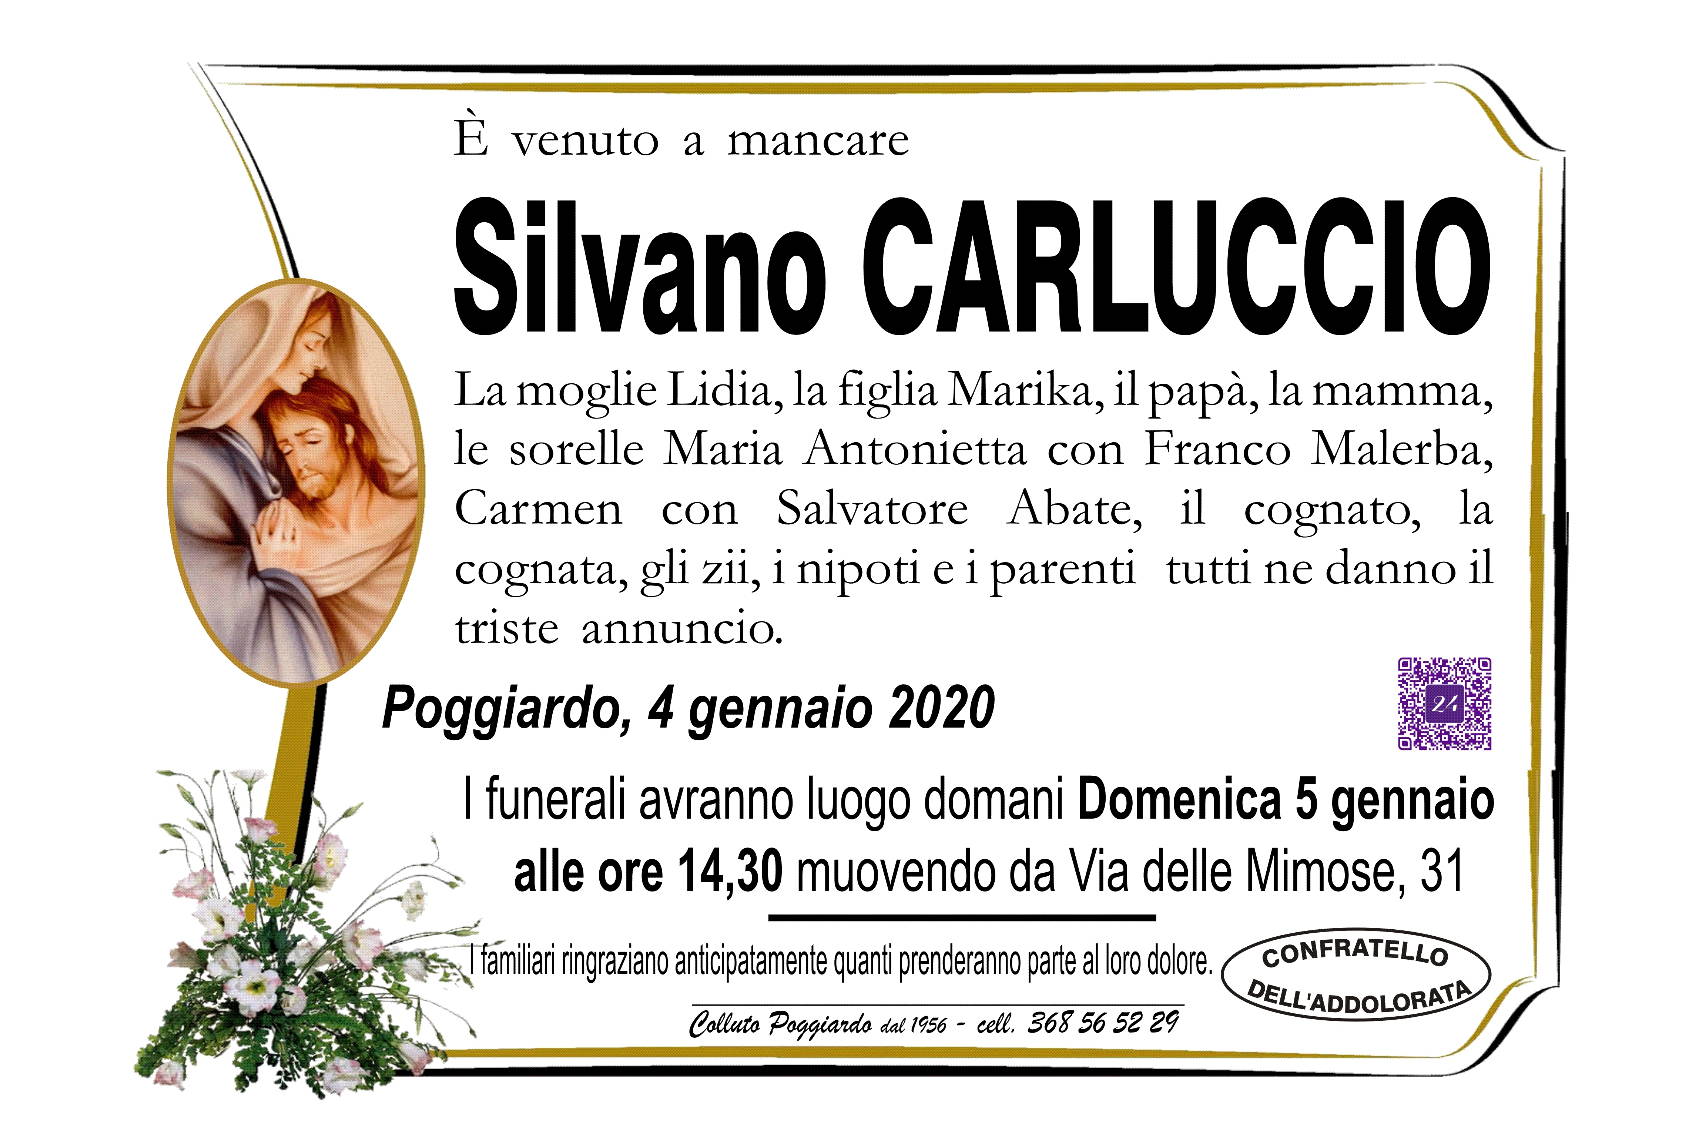 Silvano Carluccio